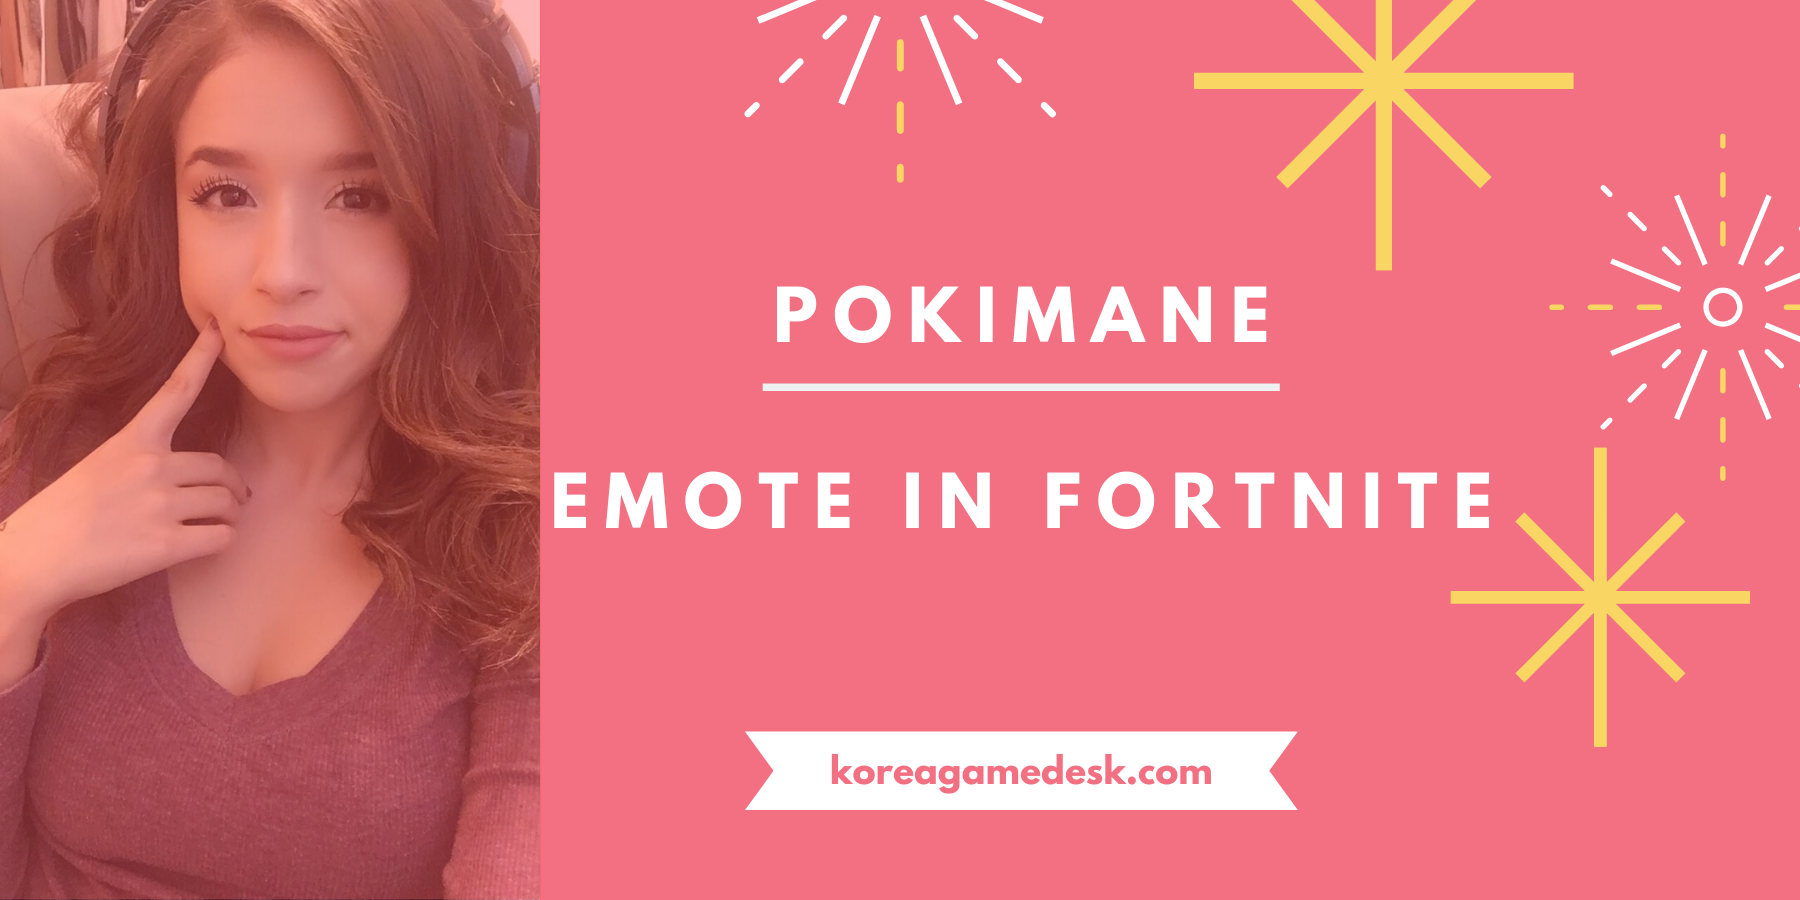 Poki Emote RETURN RELEASE DATE! When Will Poki Emote Come back